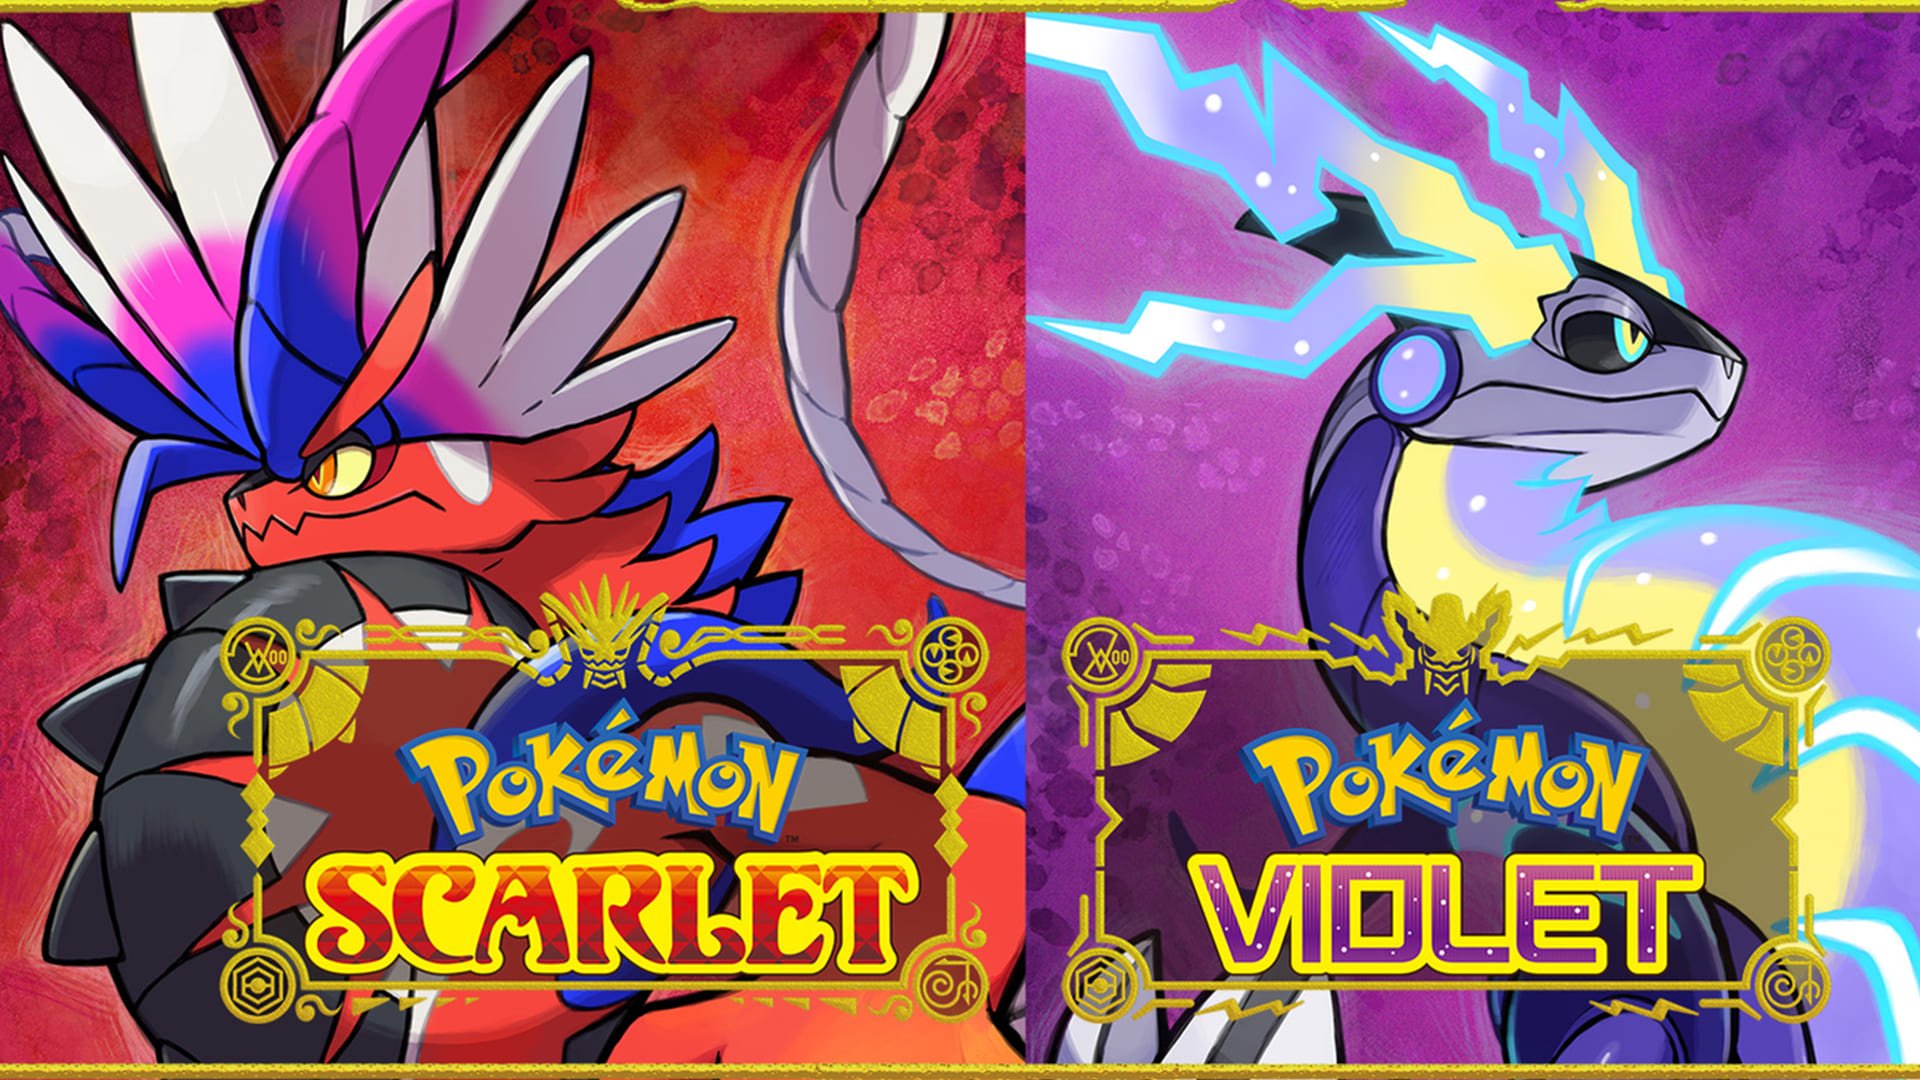 Pokemon Violet Guides (copia) (copia) (copia) (copia)